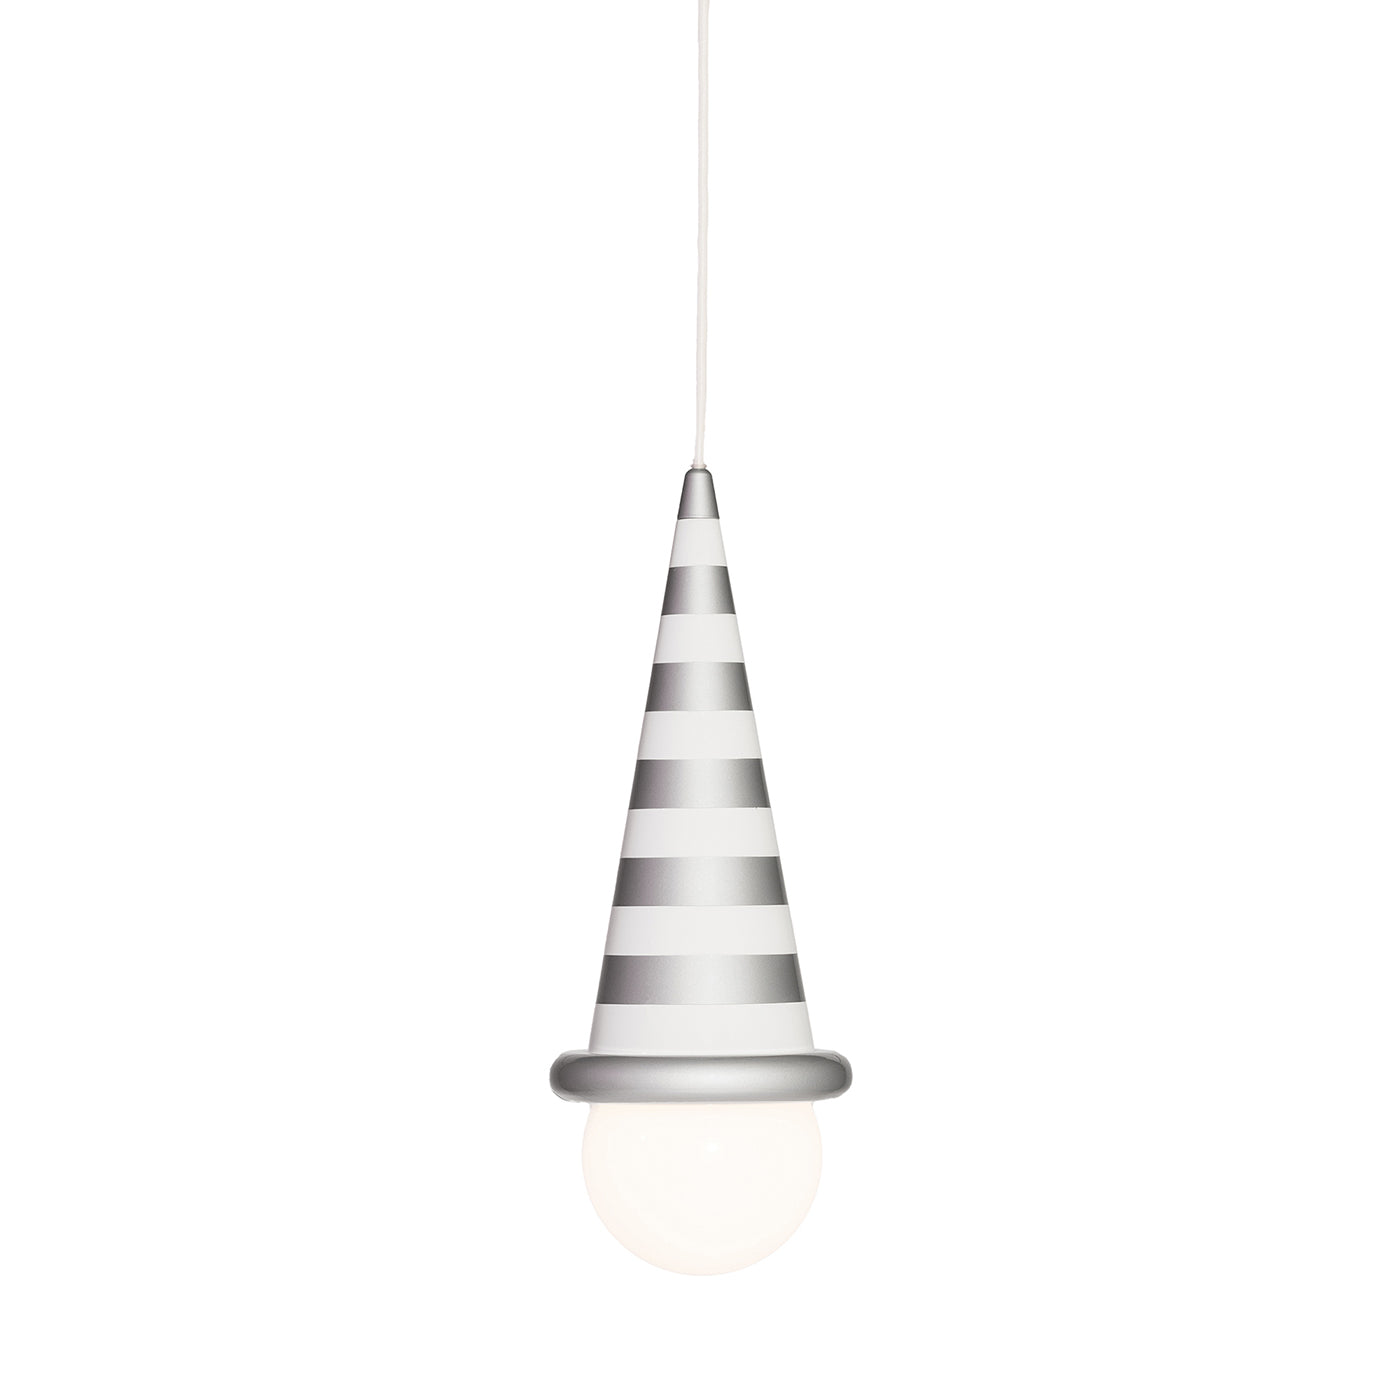 Gelato Striped Pendant Lamp by MASANORI UMEDA - Post Design - Main view